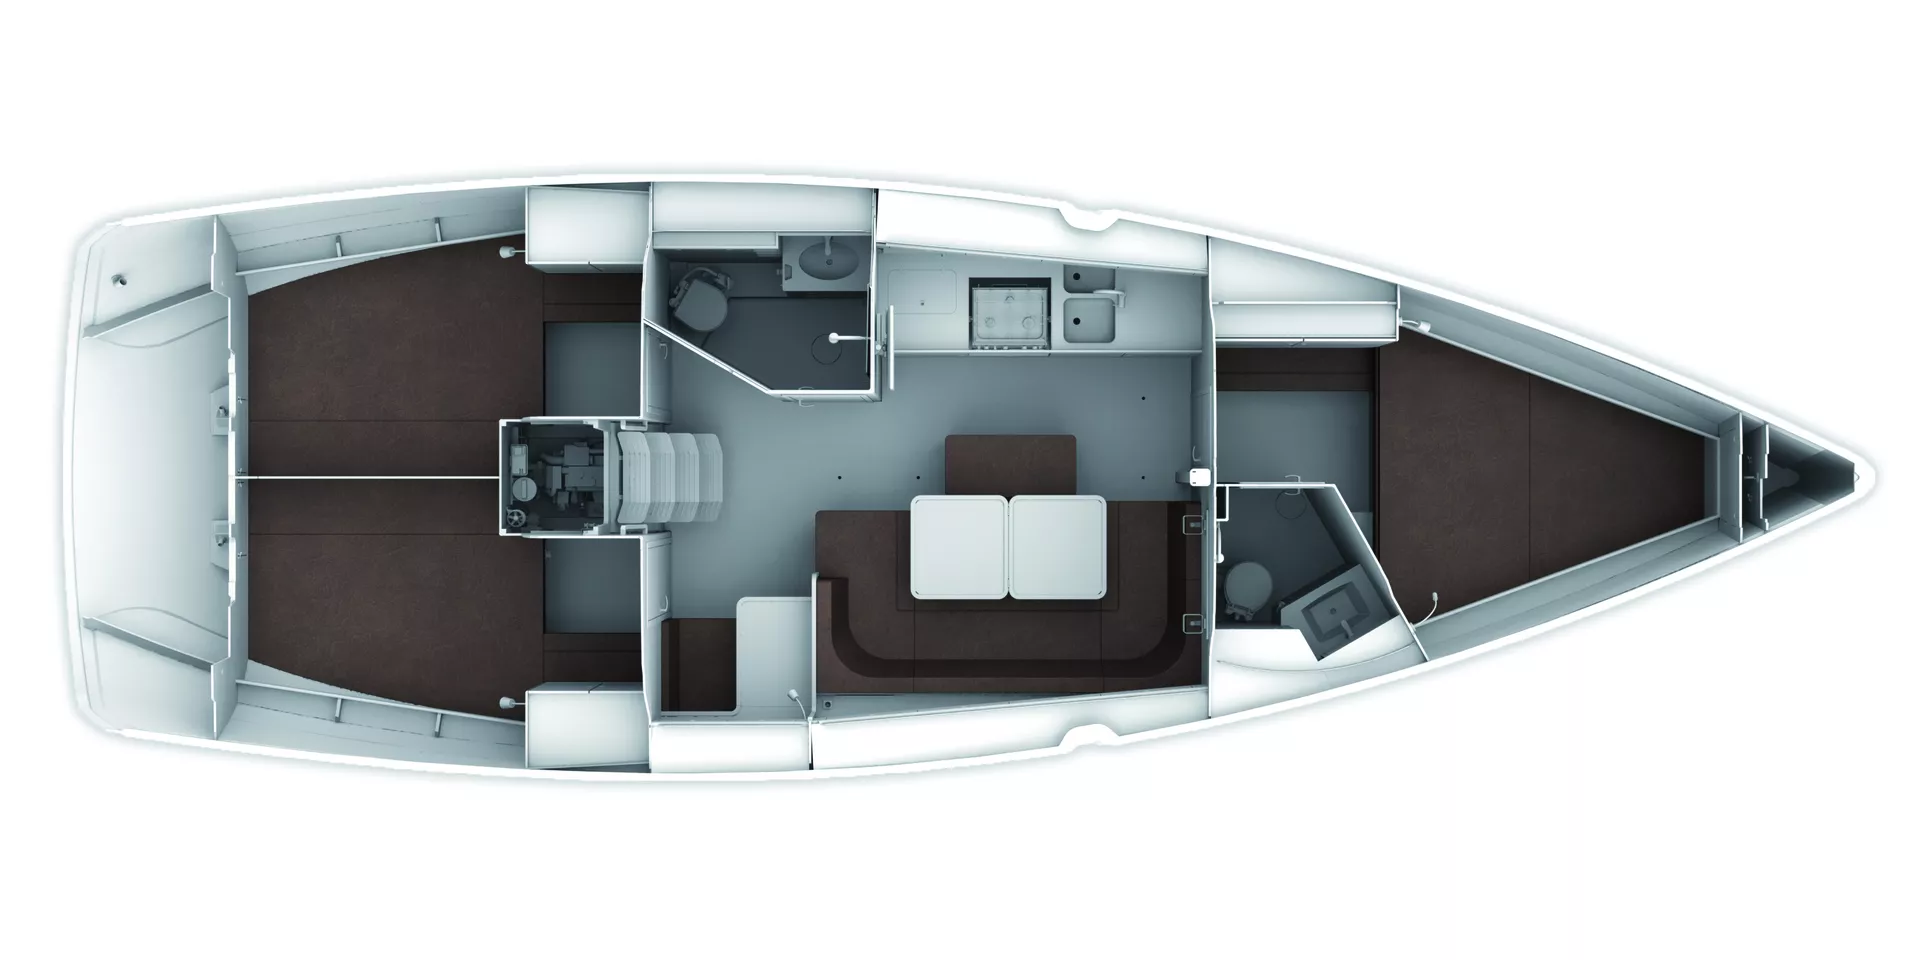 Draufsicht auf eine moderne Segelyacht mit offenem Grundriss, verschiedenen Sitzbereichen, einem Steuerstand und einem Heckmotor. Der Innenraum ist zweifarbig in Weiß und Braun gehalten.